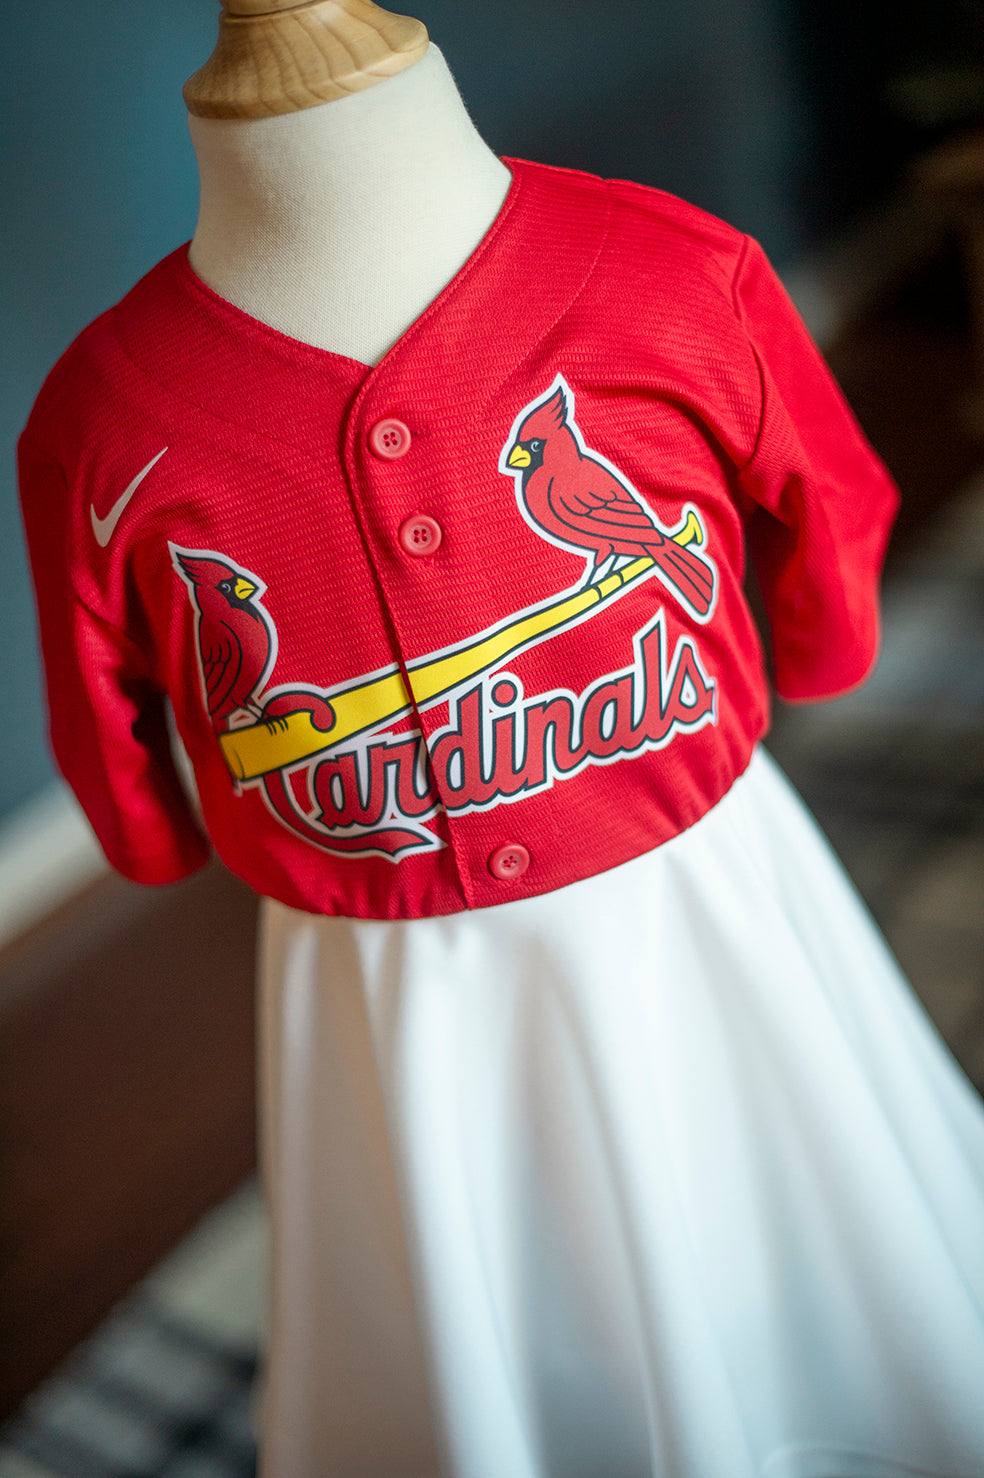 St. Louis Baseball Fan Dress (Red) - Girls